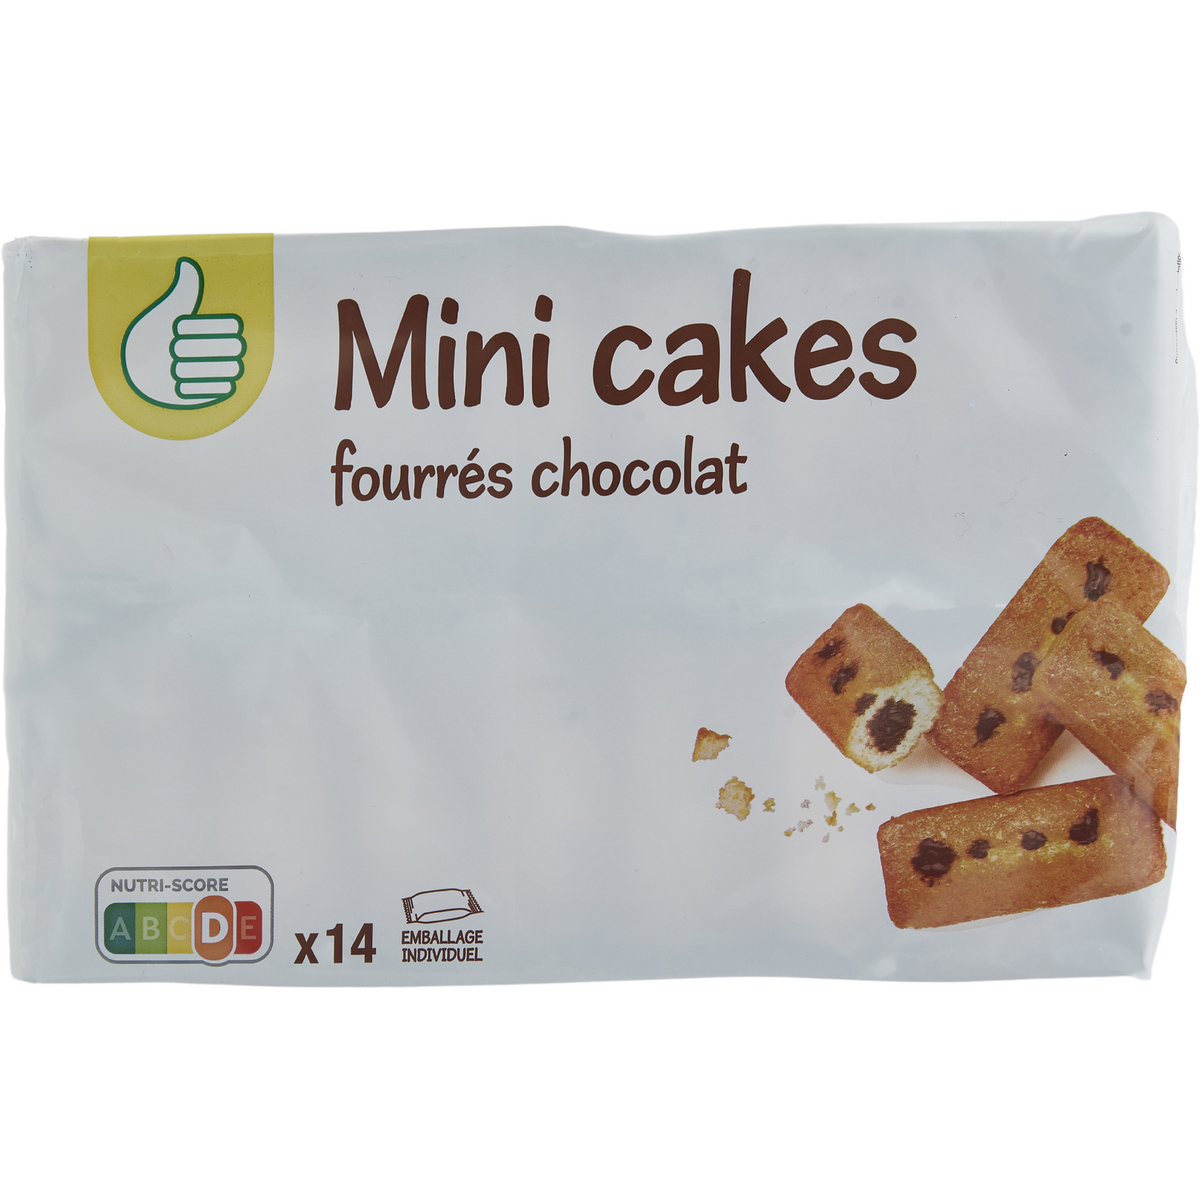 POUCE Mini cakes fourrés chocolat emballage individuel 14 pièces 420g